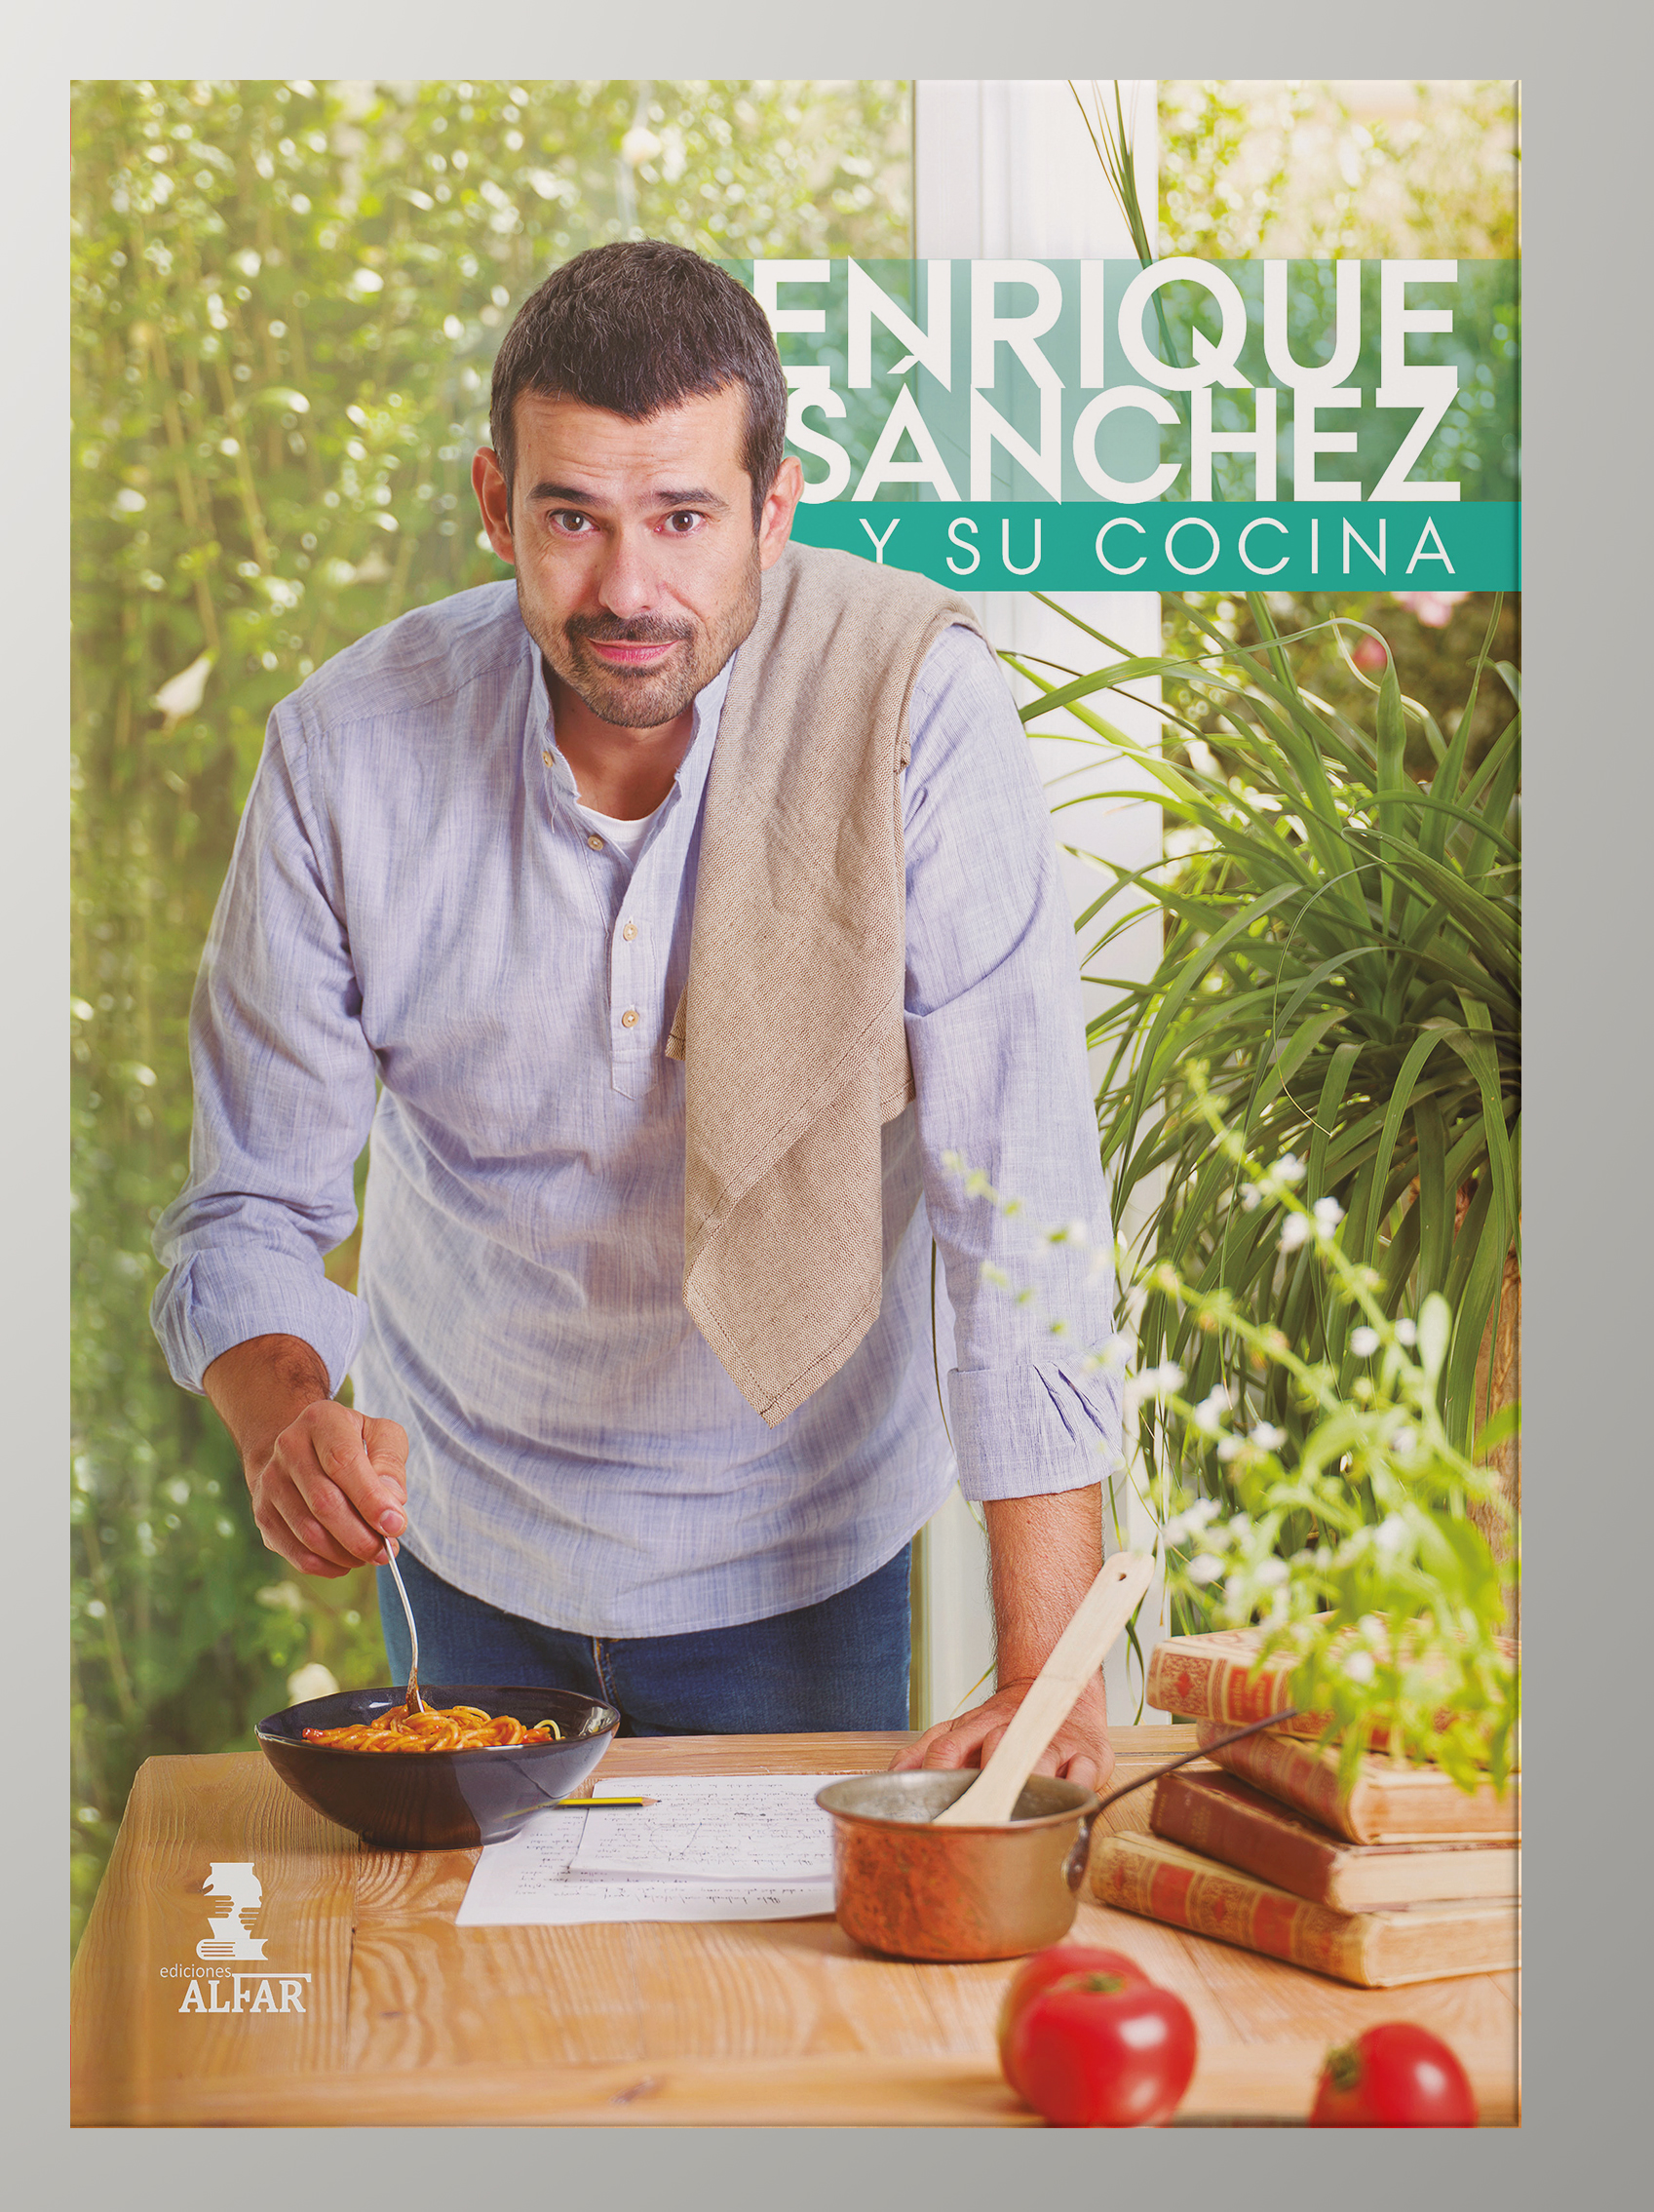 Ediciones Alfar S.A. on X: #EnriqueSánchez #cocina #Cómetelo #recetas  Cocina y punto. Las mejores recetas de Enrique Sánchez, es lo nuevo del  cocinero y presentador Enrique Sánchez. Más de cien recetas seleccionadas